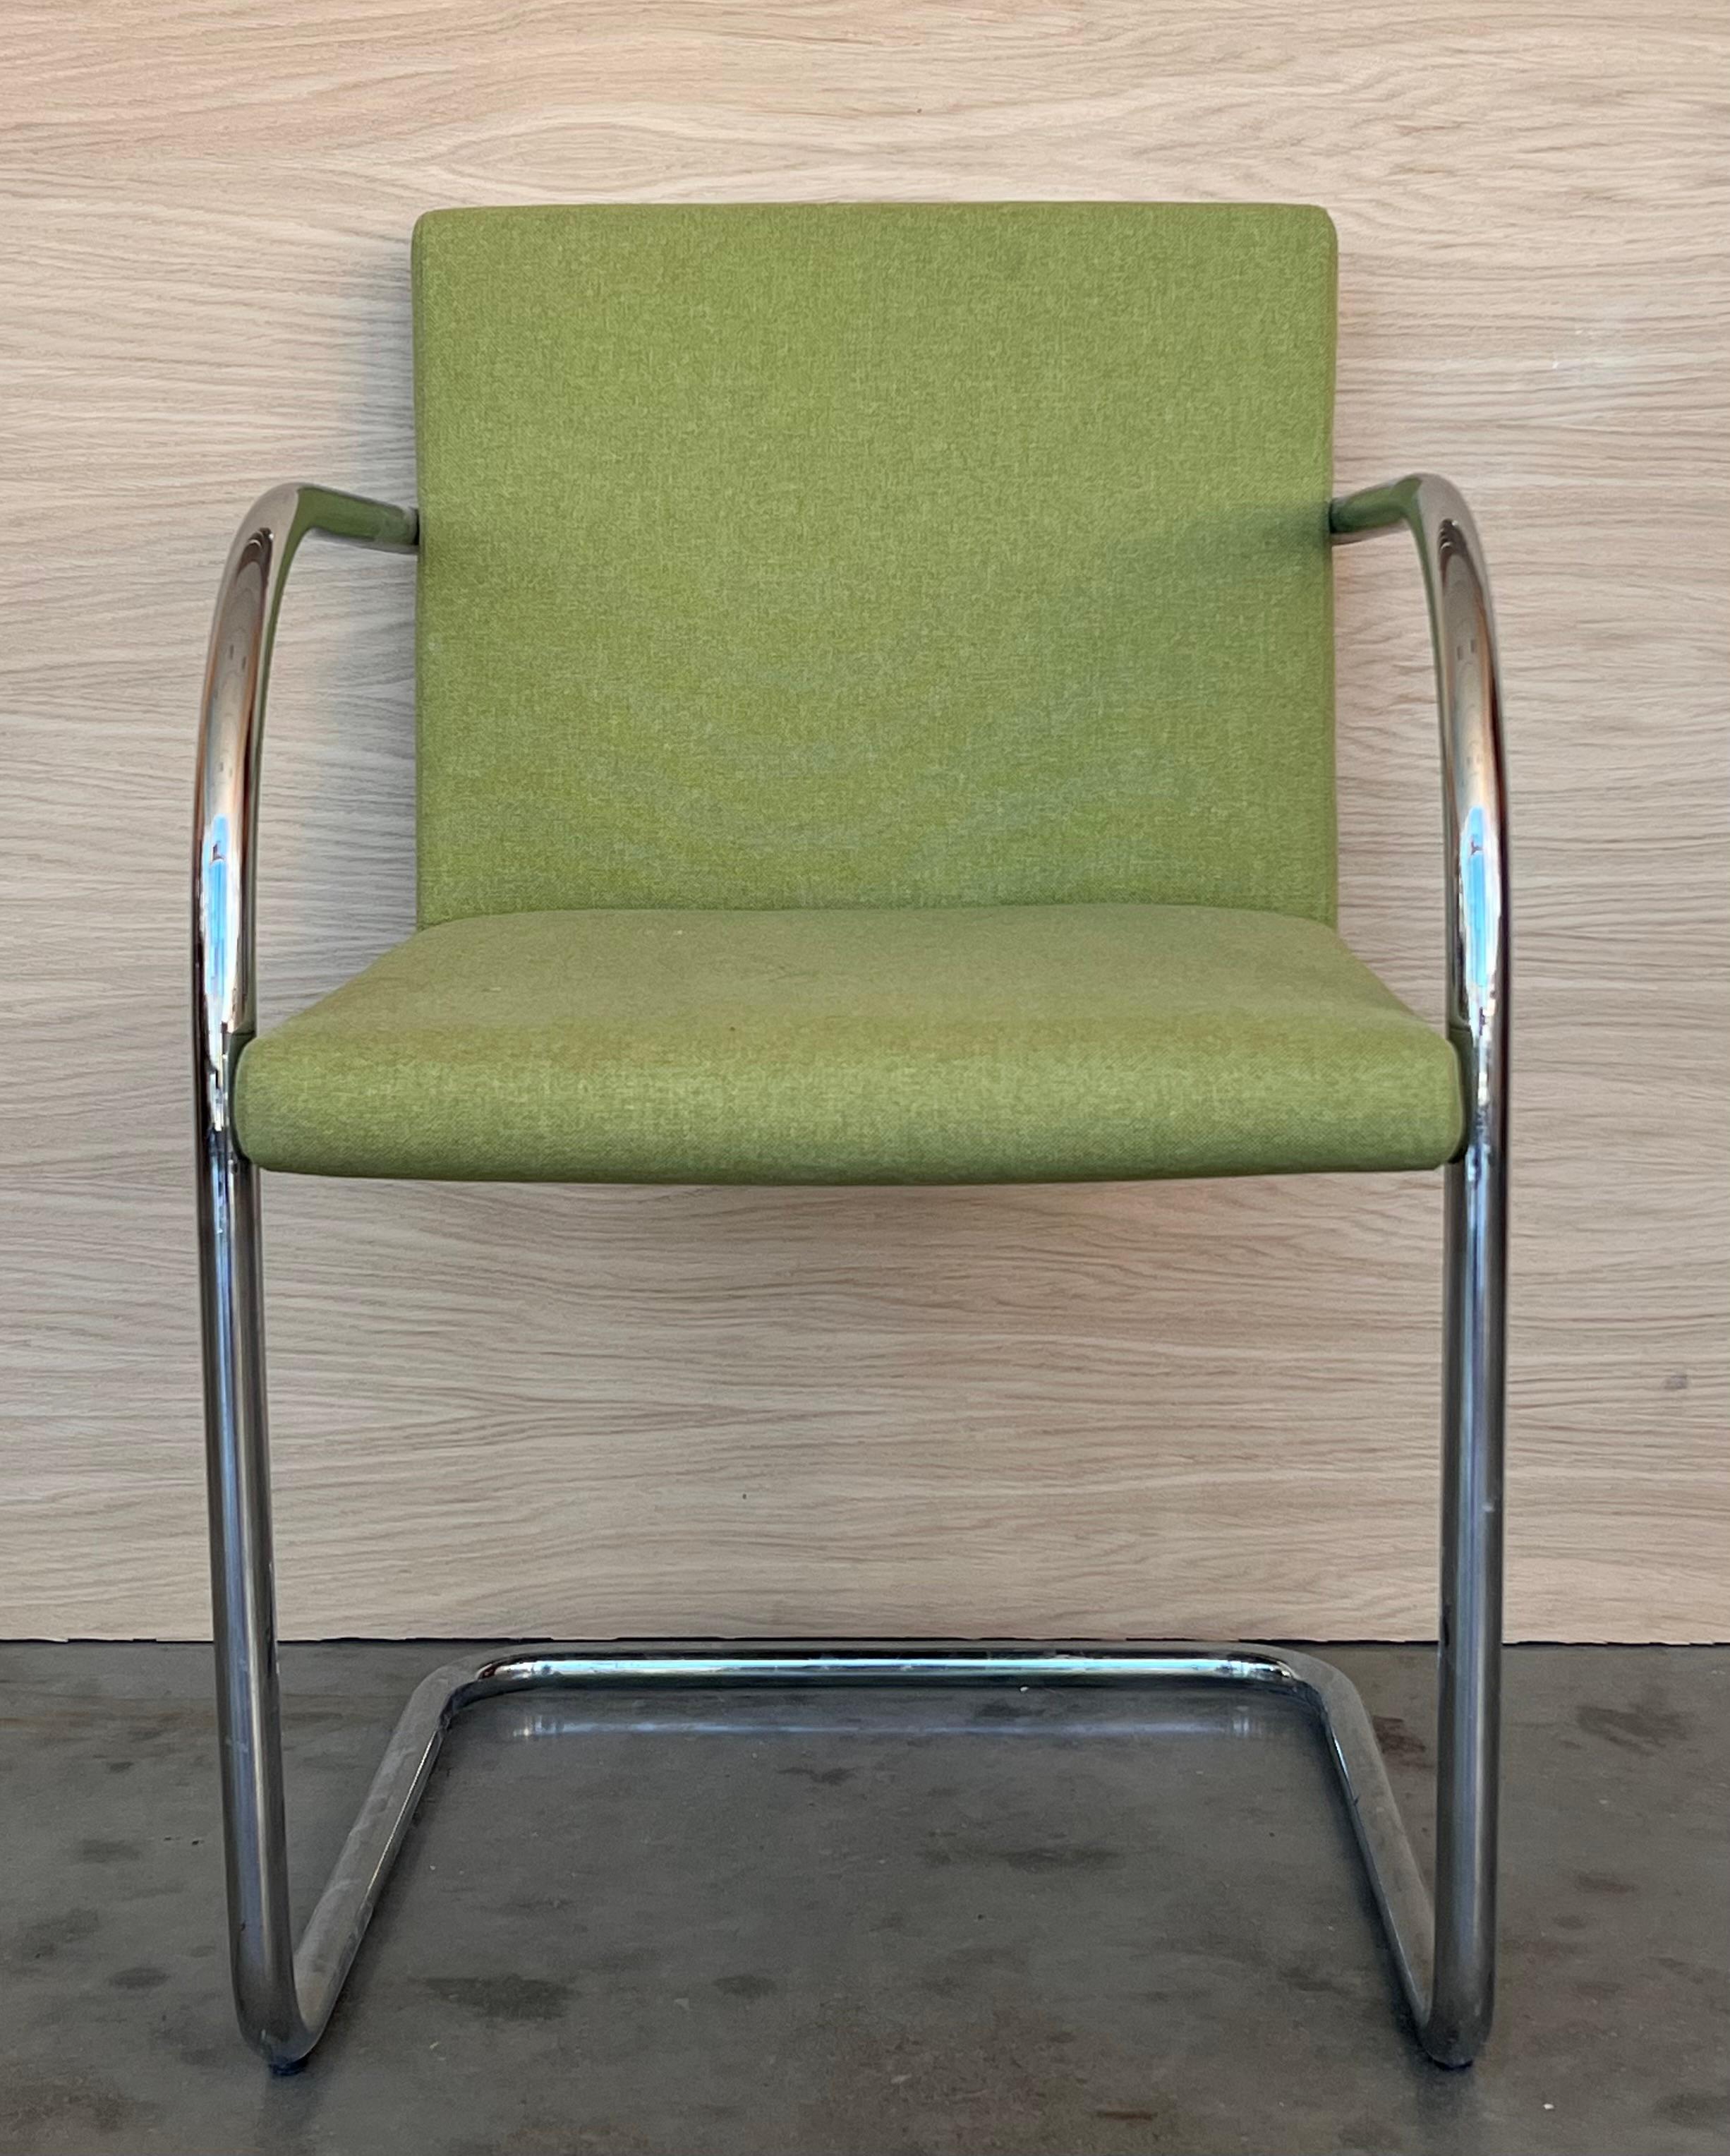 Ces chaises tubulaires Brno de Mies van deer Rohe ont une structure en acier inoxydable et sont revêtues d'un tissu vert Eames, ce qui donne une touche plus légère et ludique à un design sobre et raffiné.   